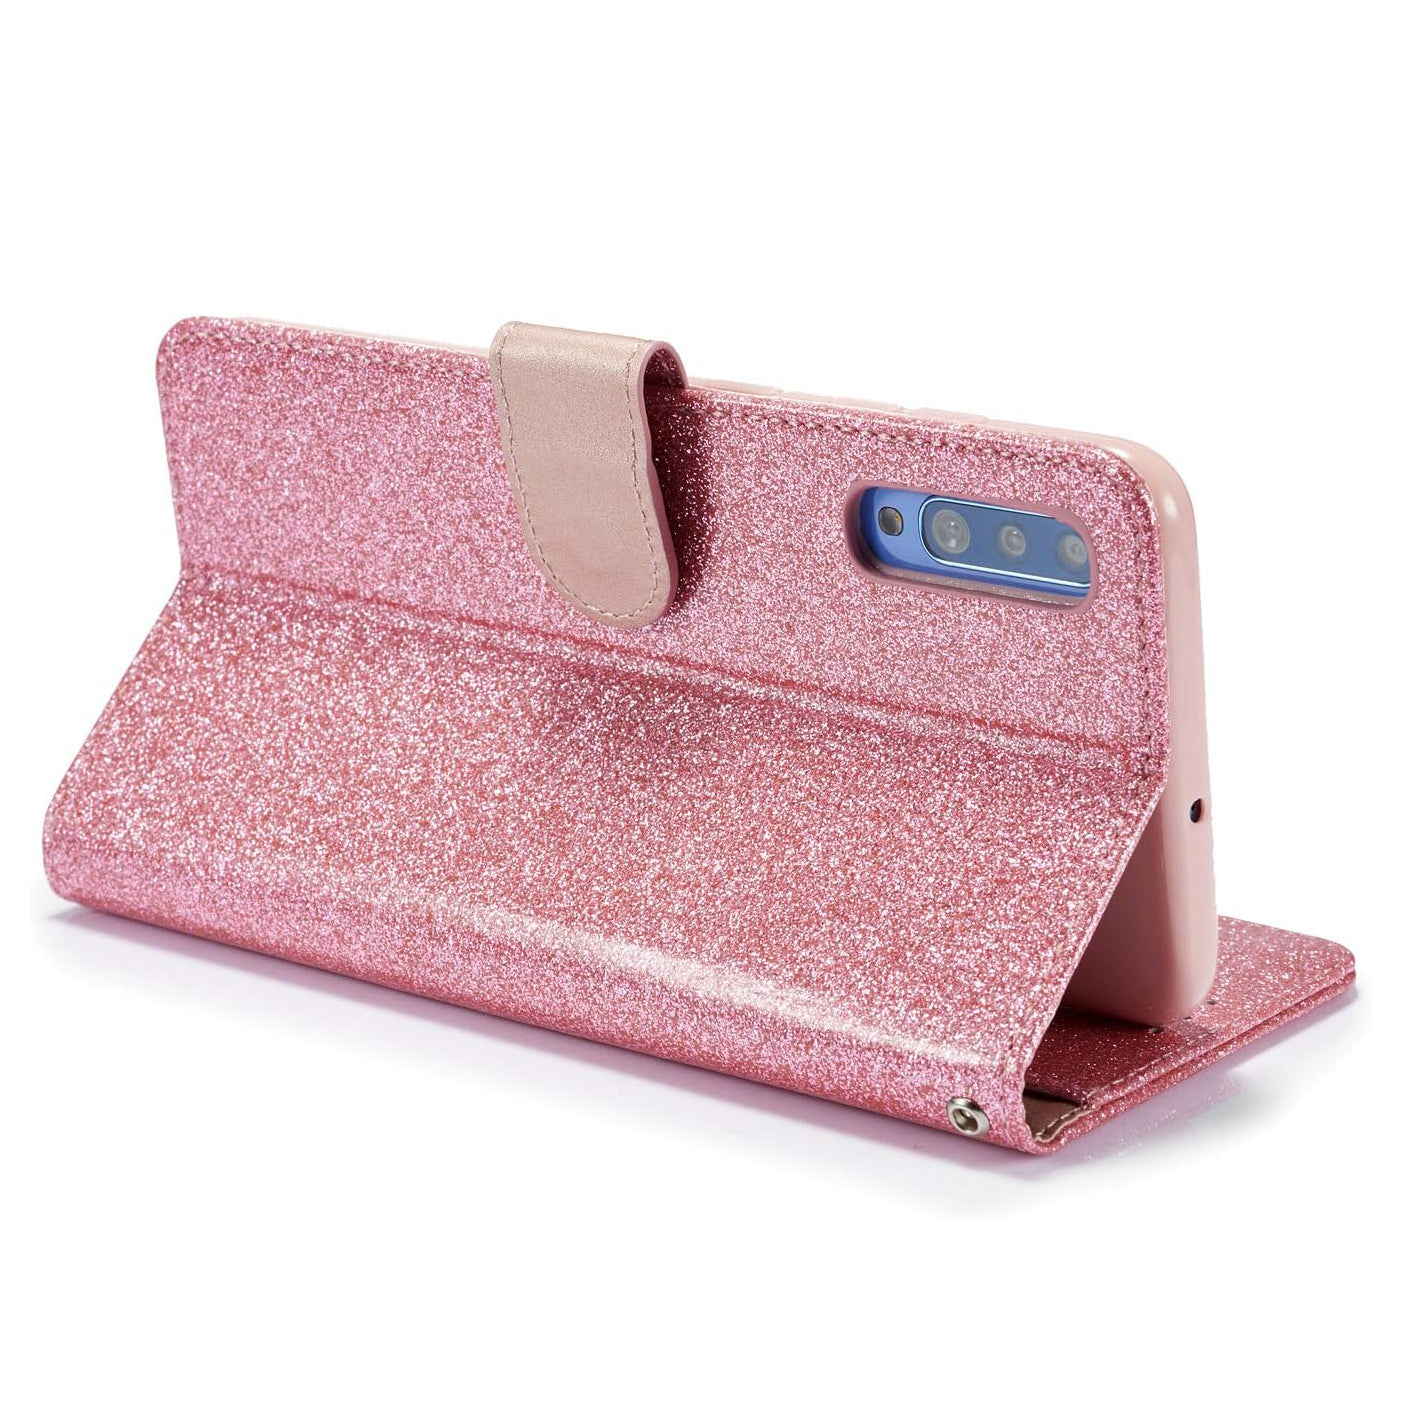 Leren portemonnee-hoesje met glitter voor iPhone, wit